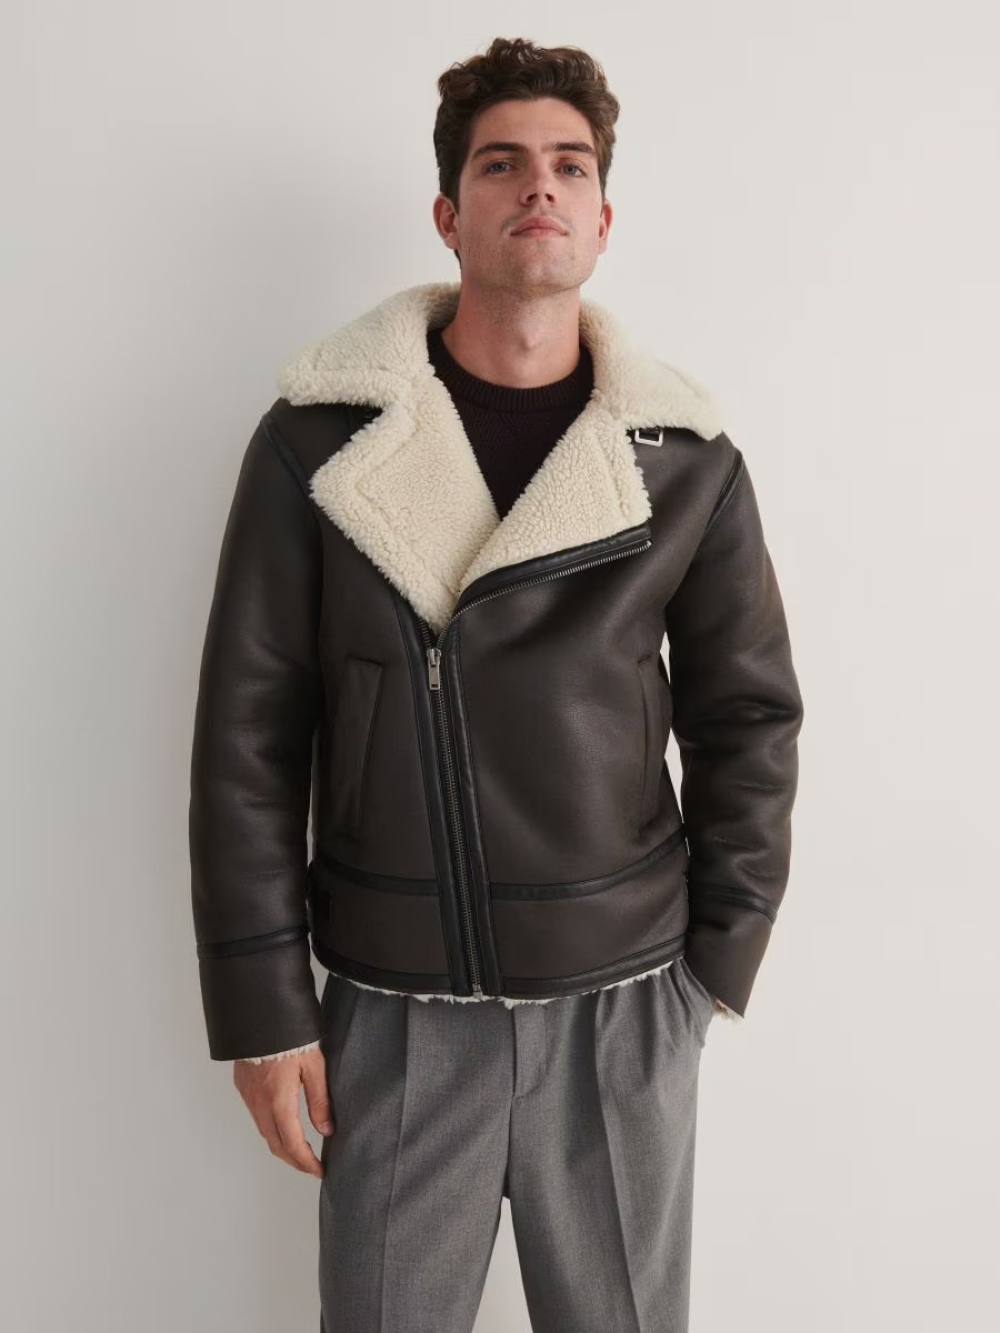 muske jakne za zimu 2023 07 Muške jakne za zimu: 7 najmodernijih modela, prema izboru naših stilista